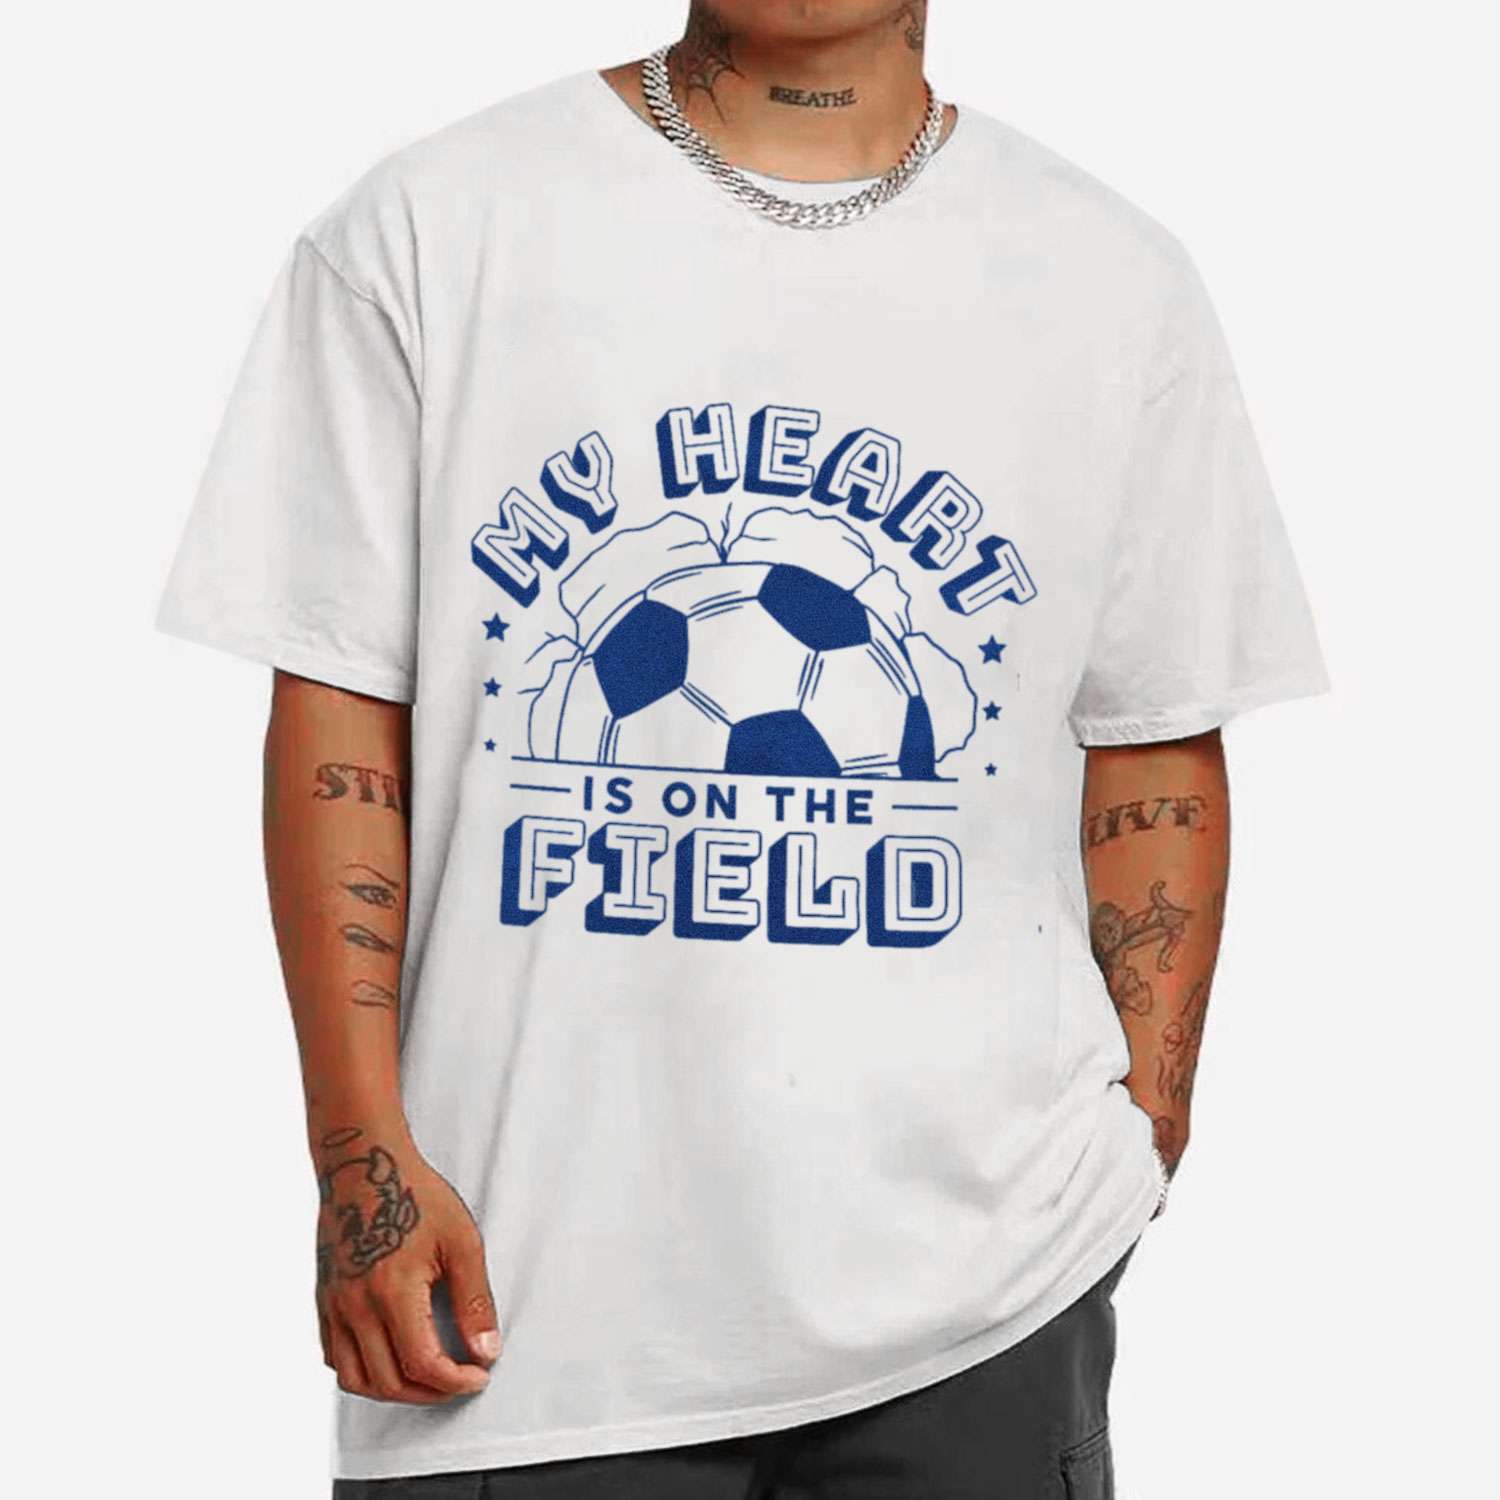 Giant Soccer Ball T-shirt